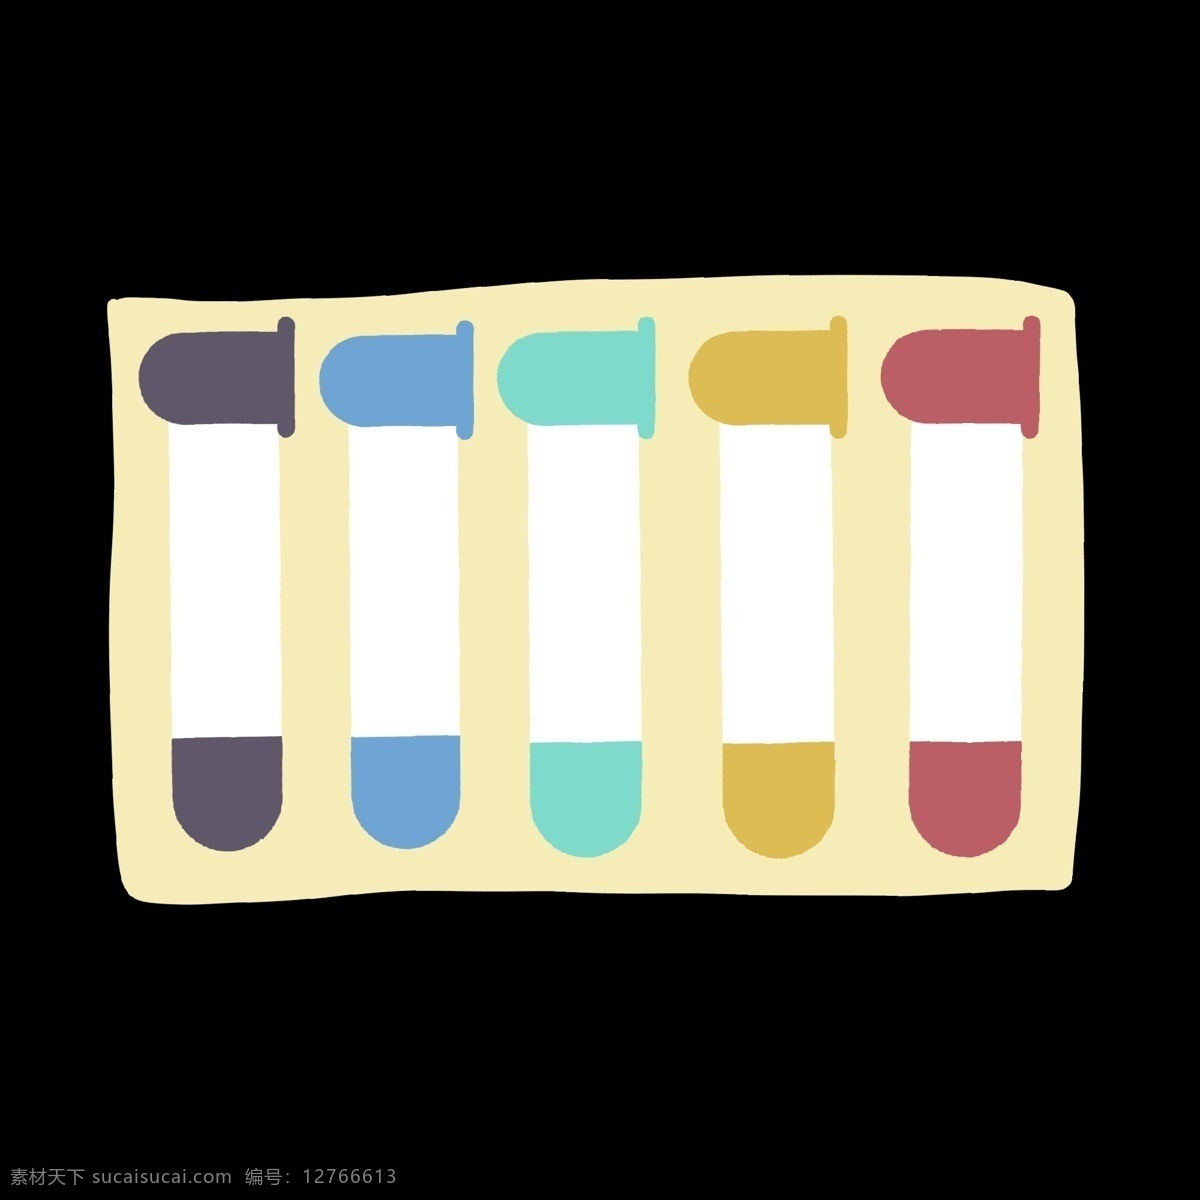 彩色 实验 器皿 分类 图 实验室 实验器皿 分类表 分解 分化 分开 ppt专用 卡通 简约 简洁 简单 五颜六色